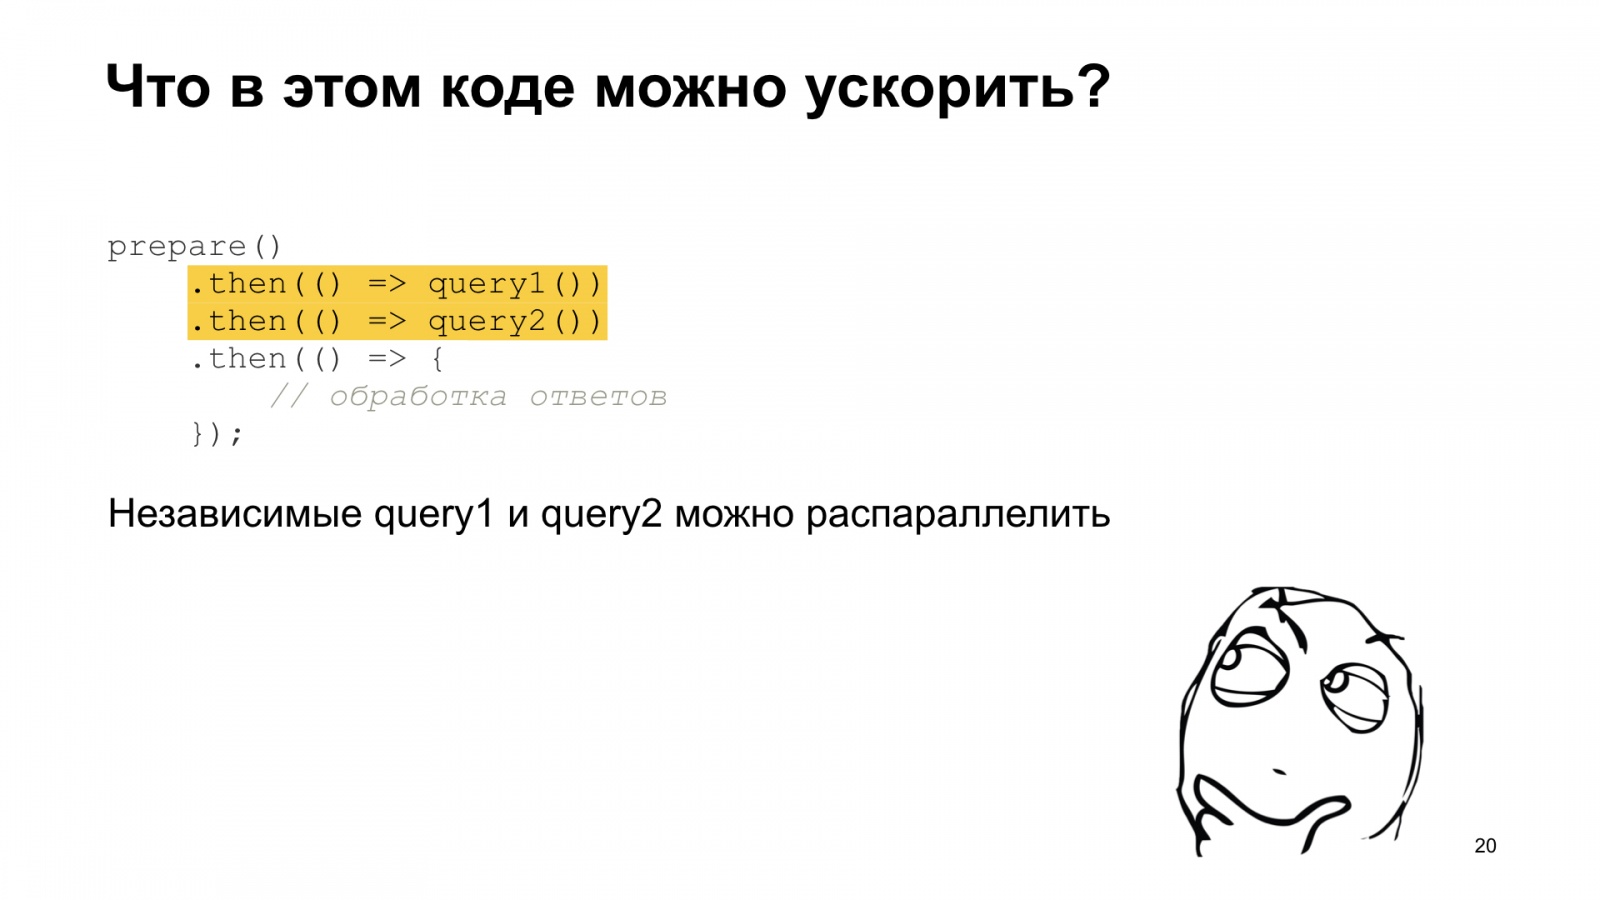 Тяжёлое бремя времени. Доклад Яндекса о типичных ошибках в работе со временем - 20